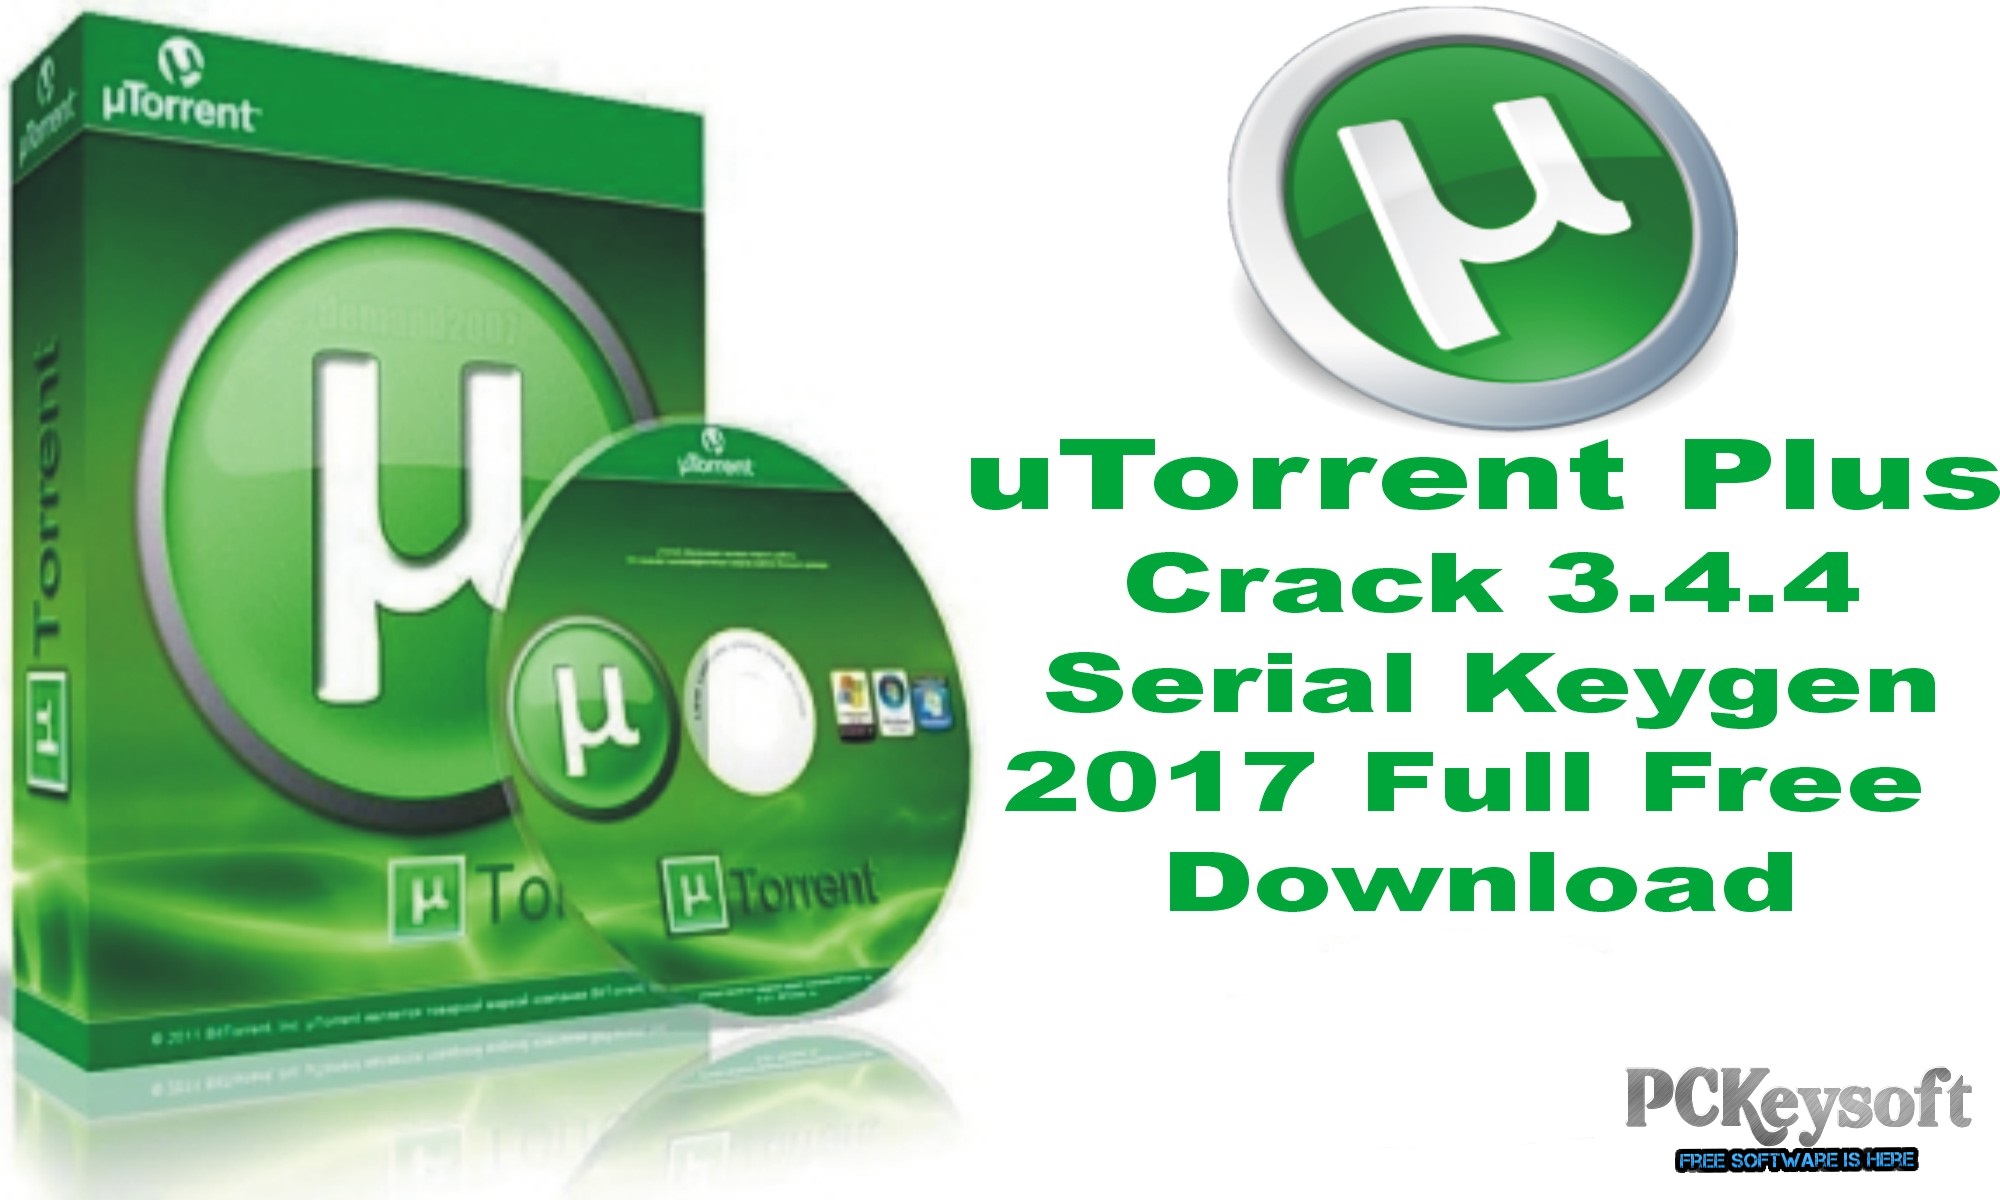 sendtox crack torrent